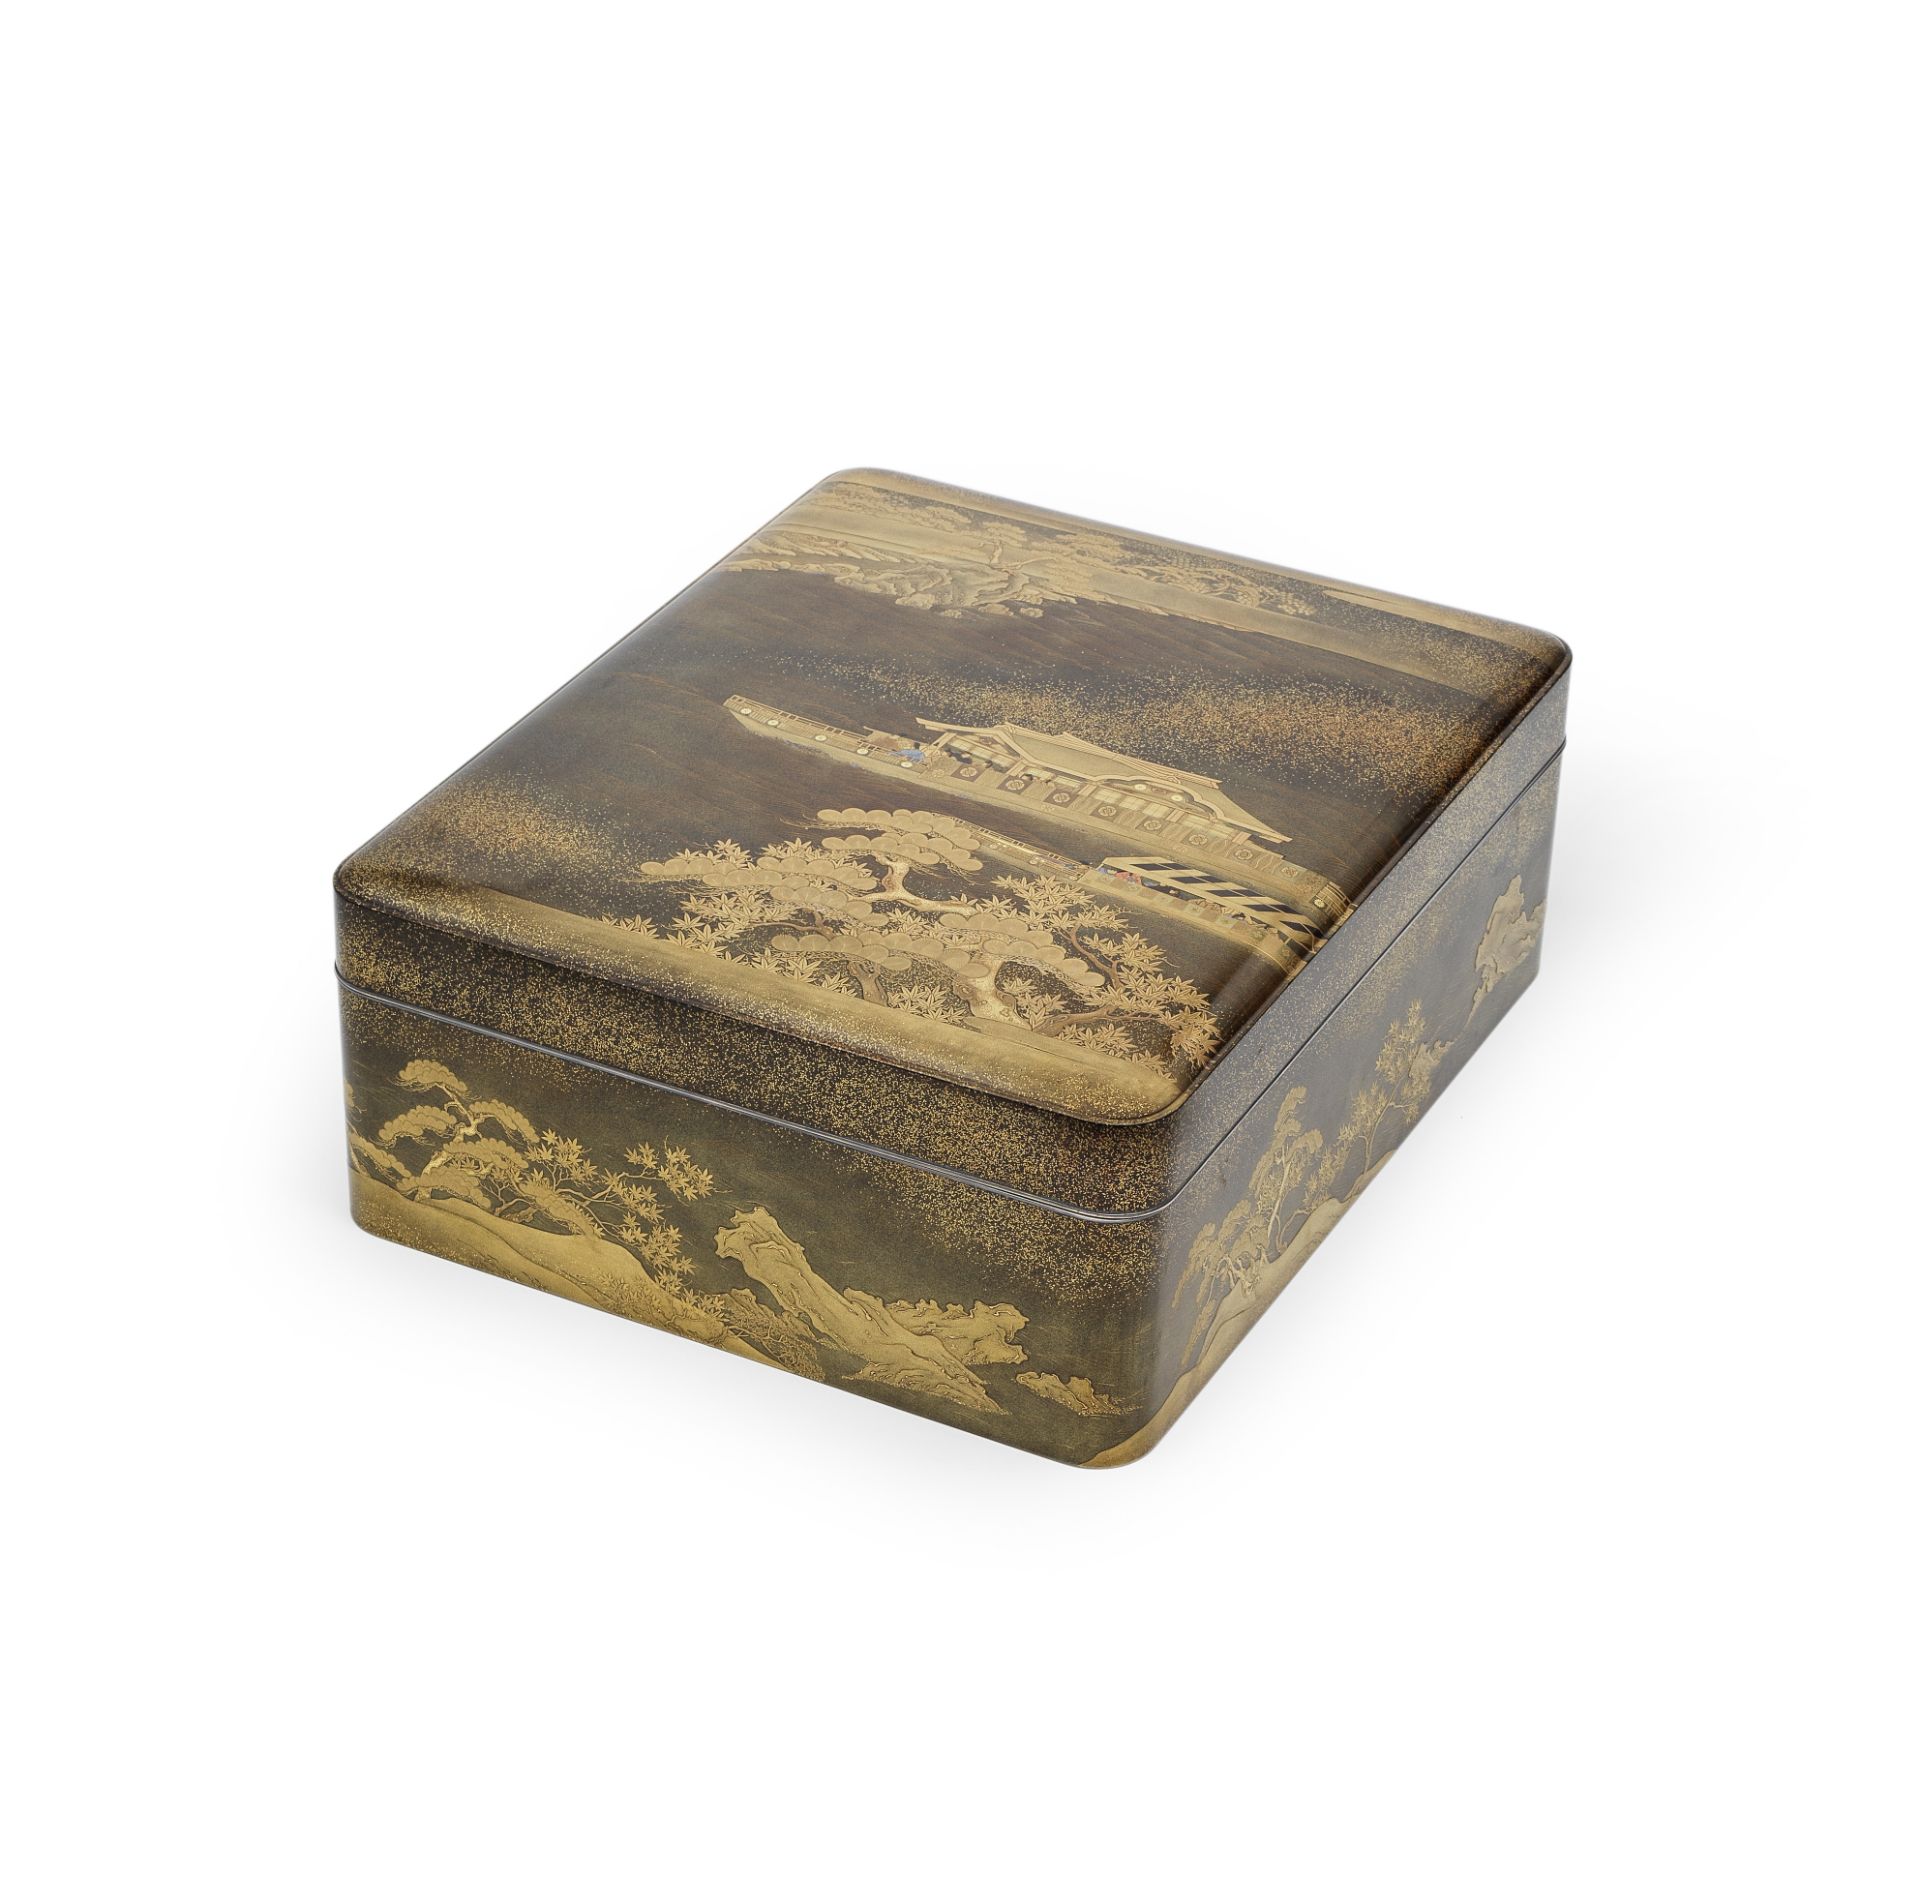 A GOLD-LACQUER LARGE ROUNDED RECTANGULAR RYOSHIBAKO (DOCUMENT BOX) Probably late Edo (1615-1868...